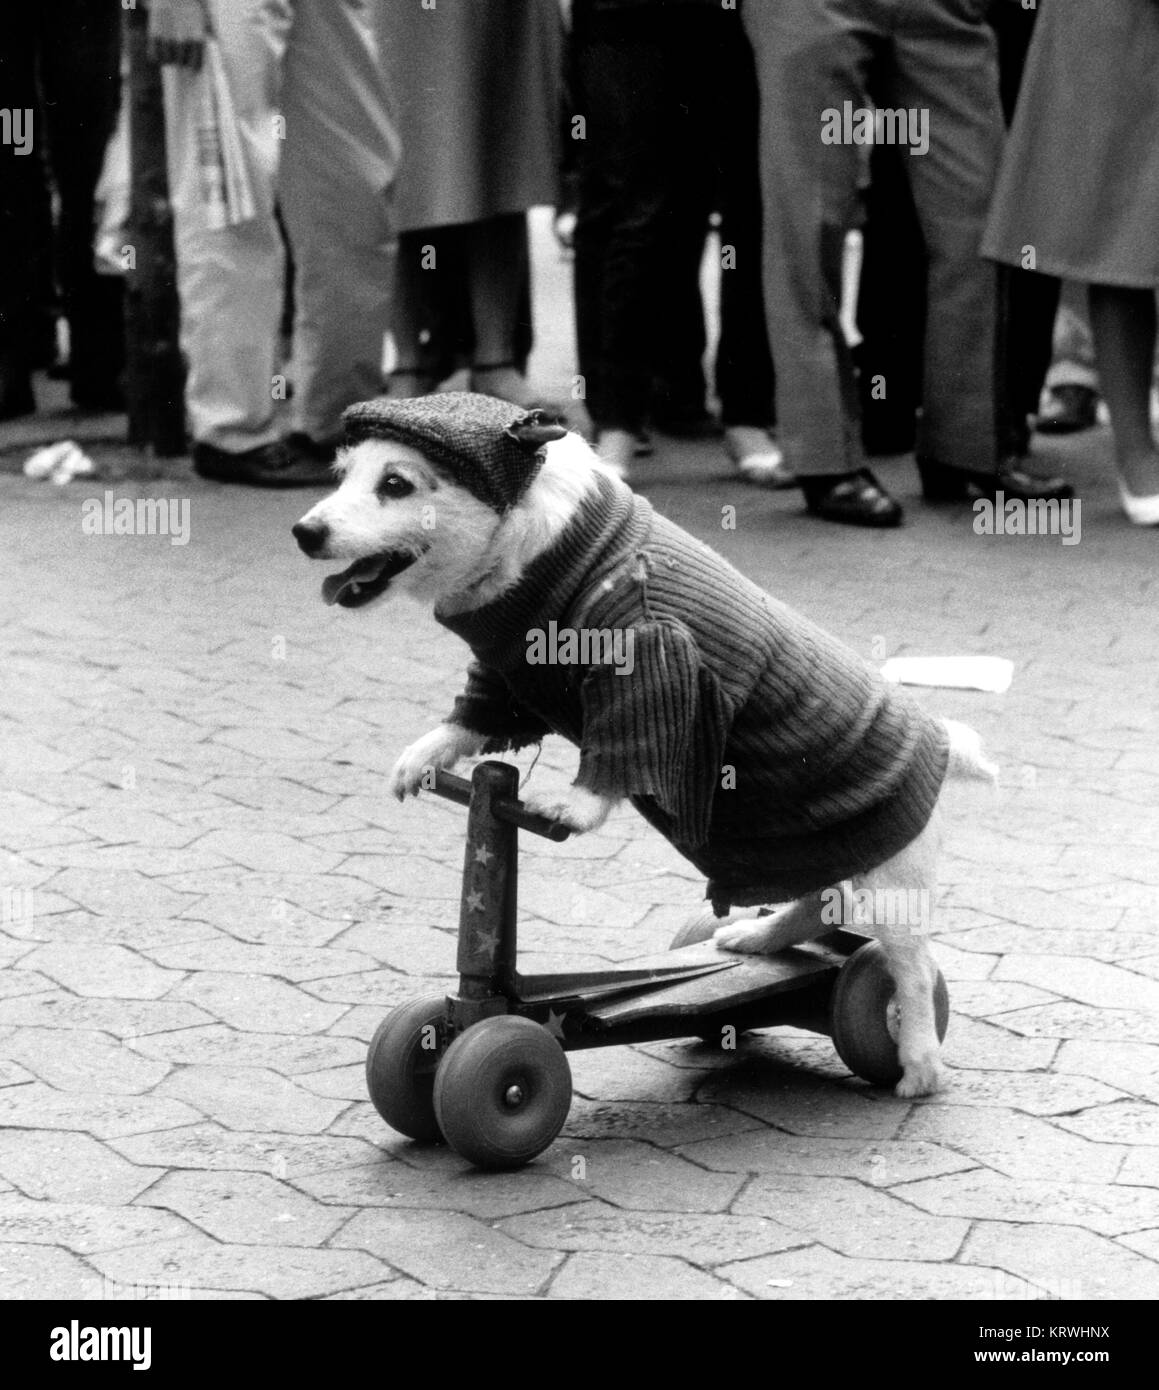 Les lecteurs de chien déguisé scooter, Angleterre, Grande-Bretagne Banque D'Images